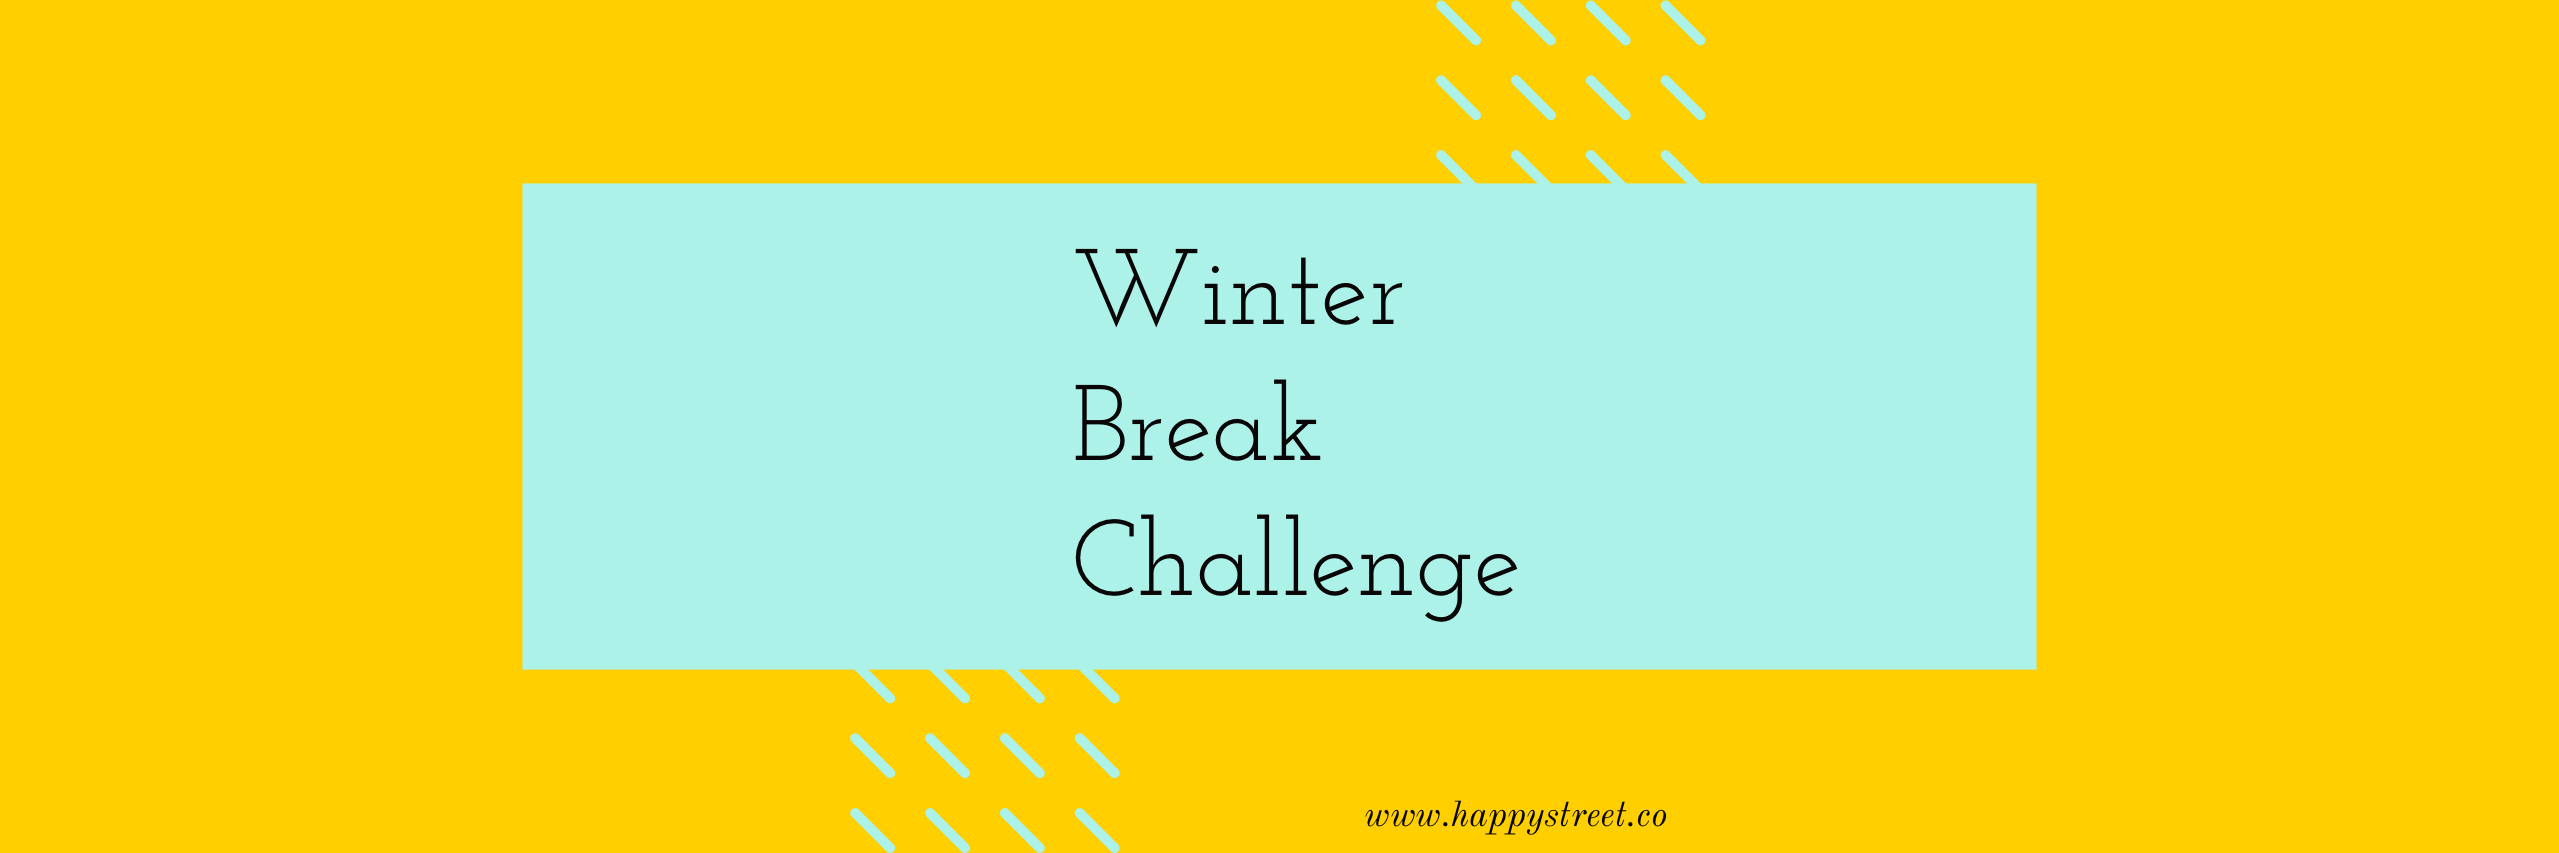 Winter Break Challenge 2020